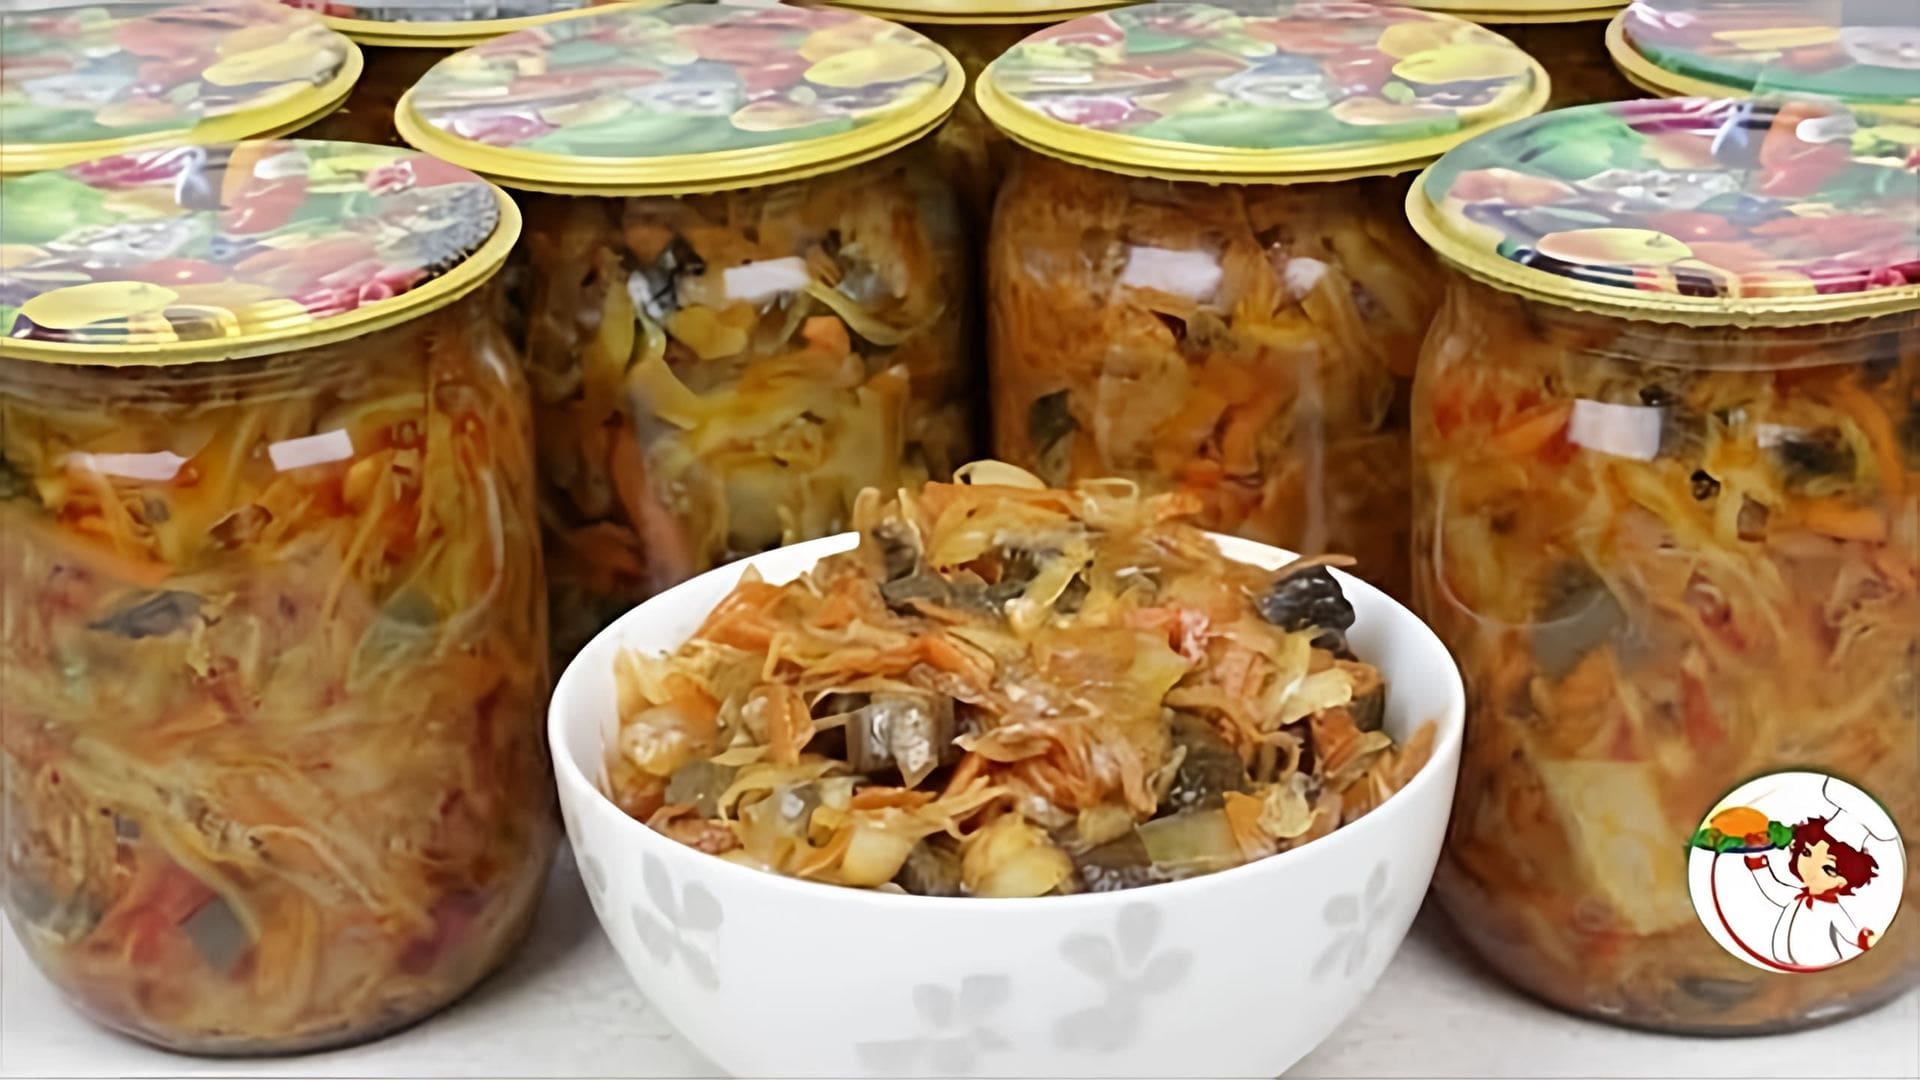 Видео рецепт солянки из грибов и капусты, вида маринованного овощного рагу, которое можно сохранить на зиму